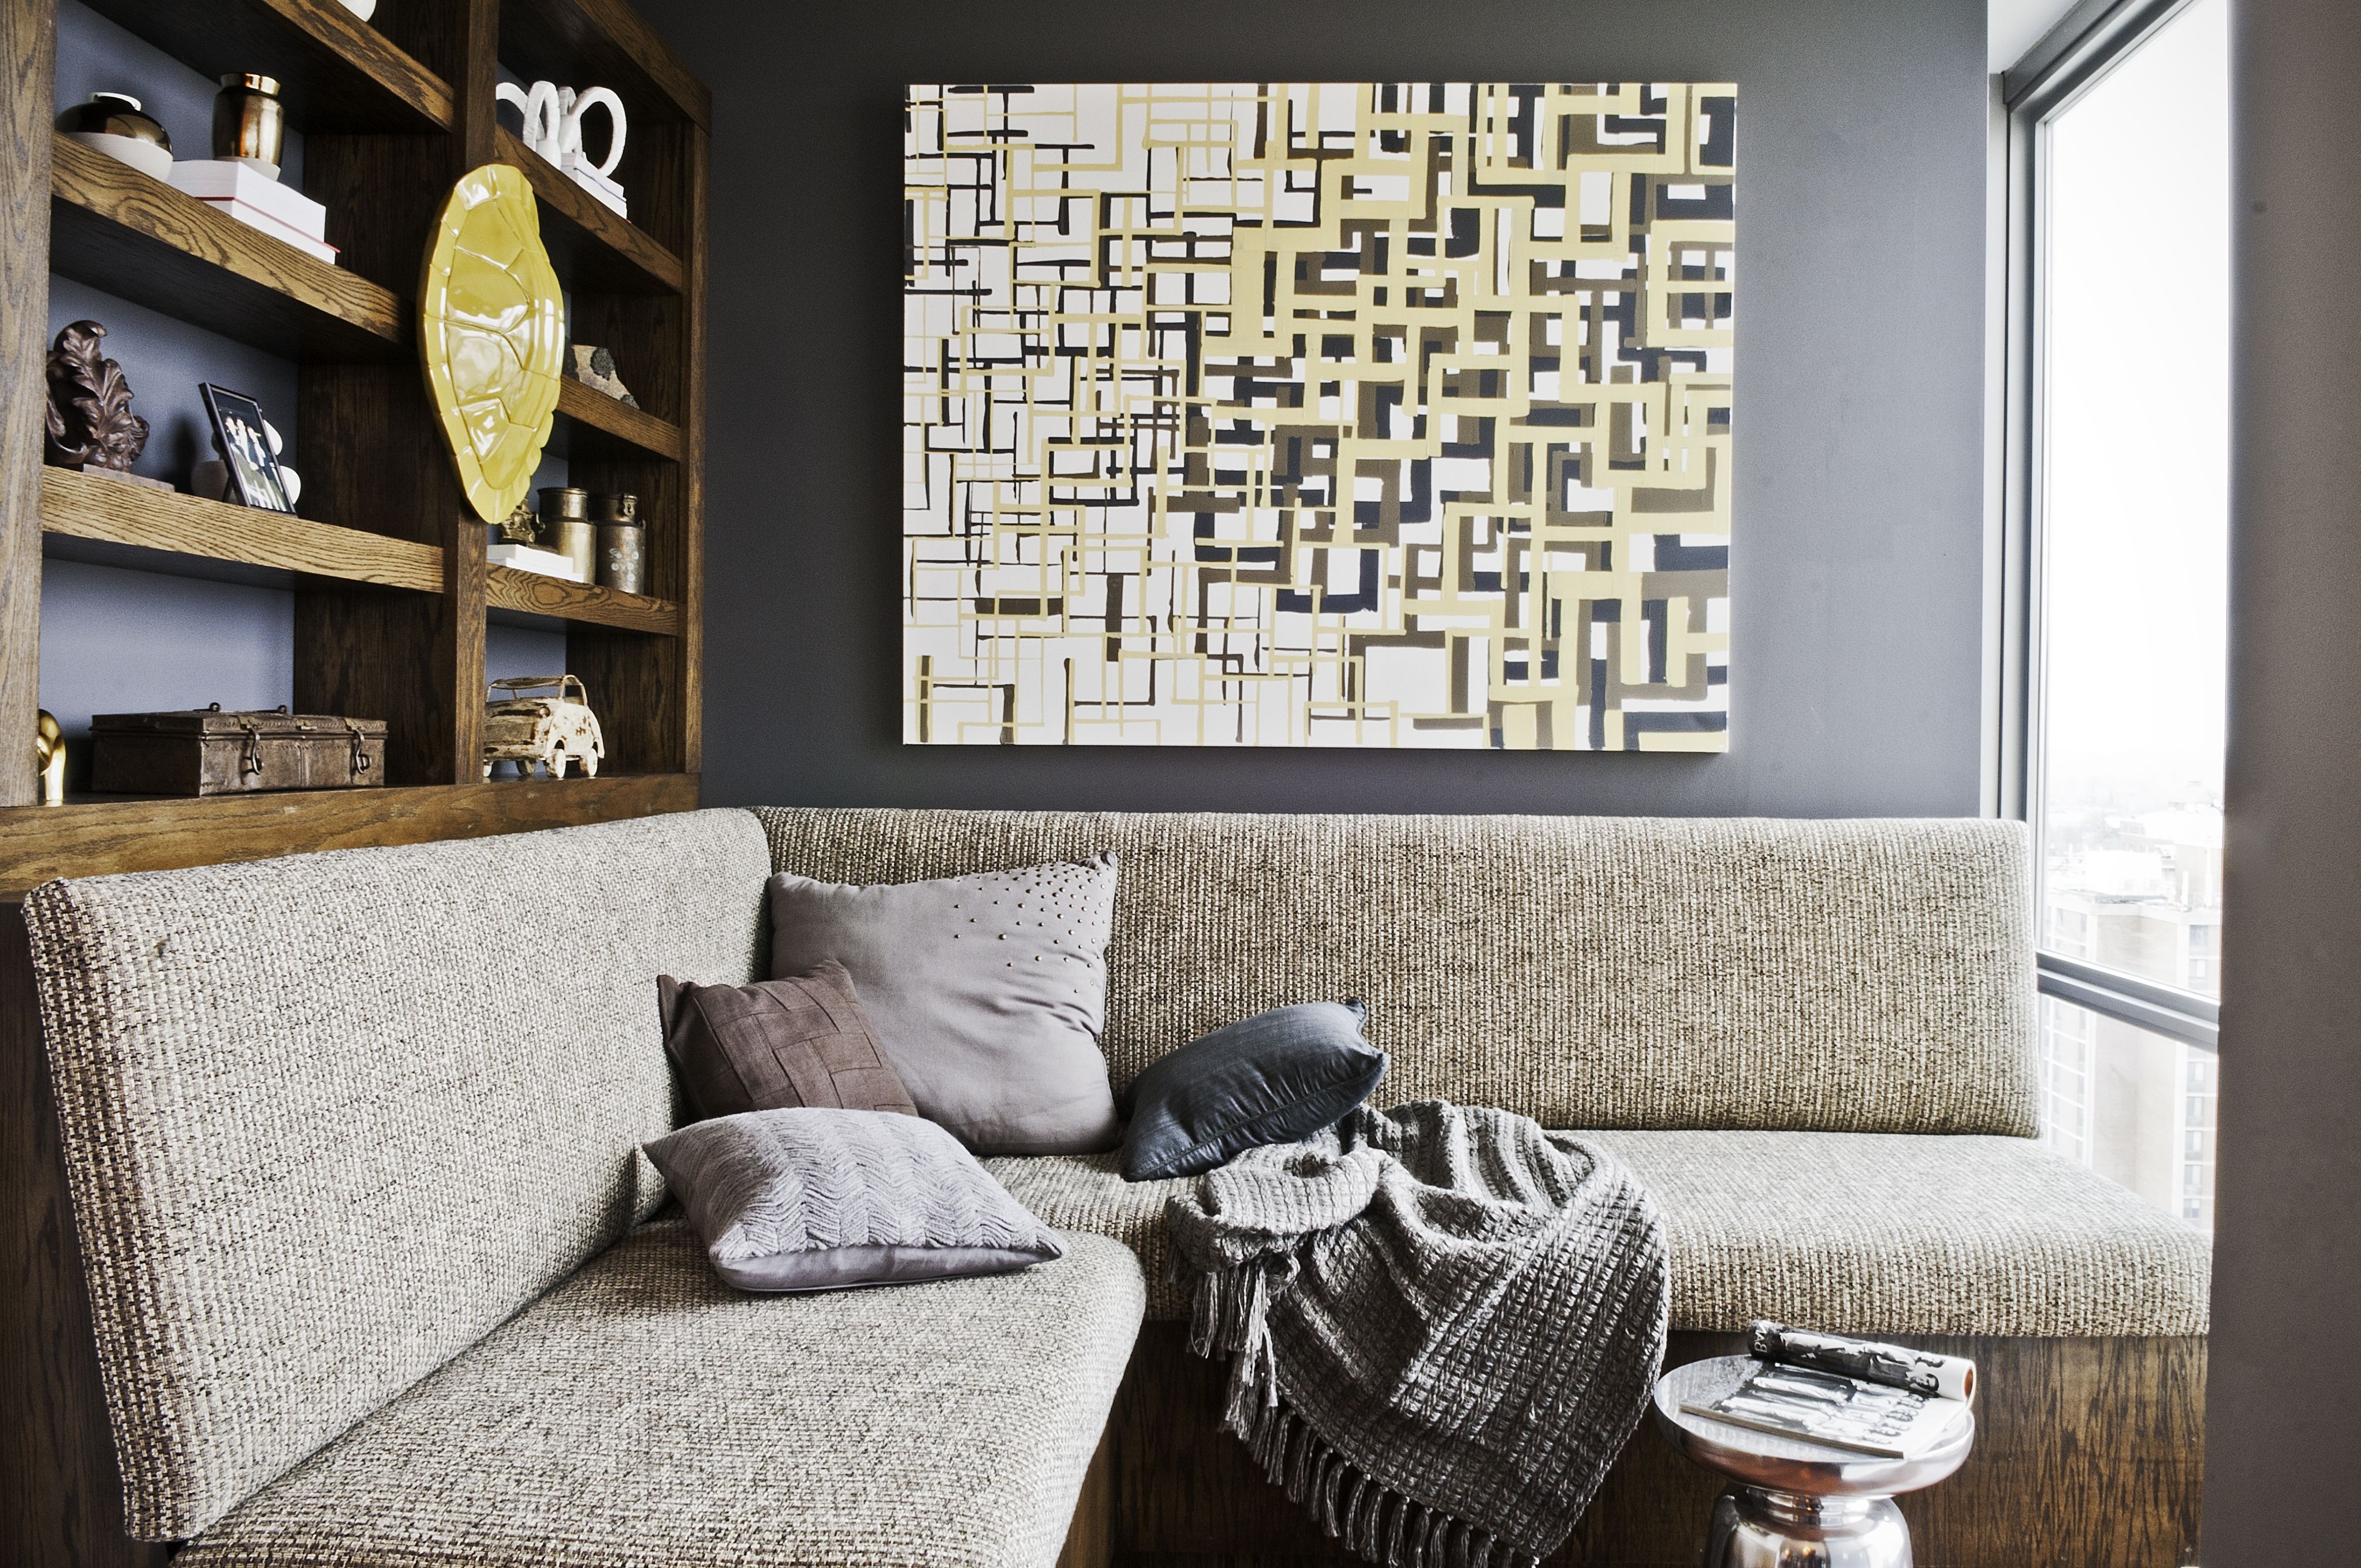 Wall Art For Bachelor Pad Living Room